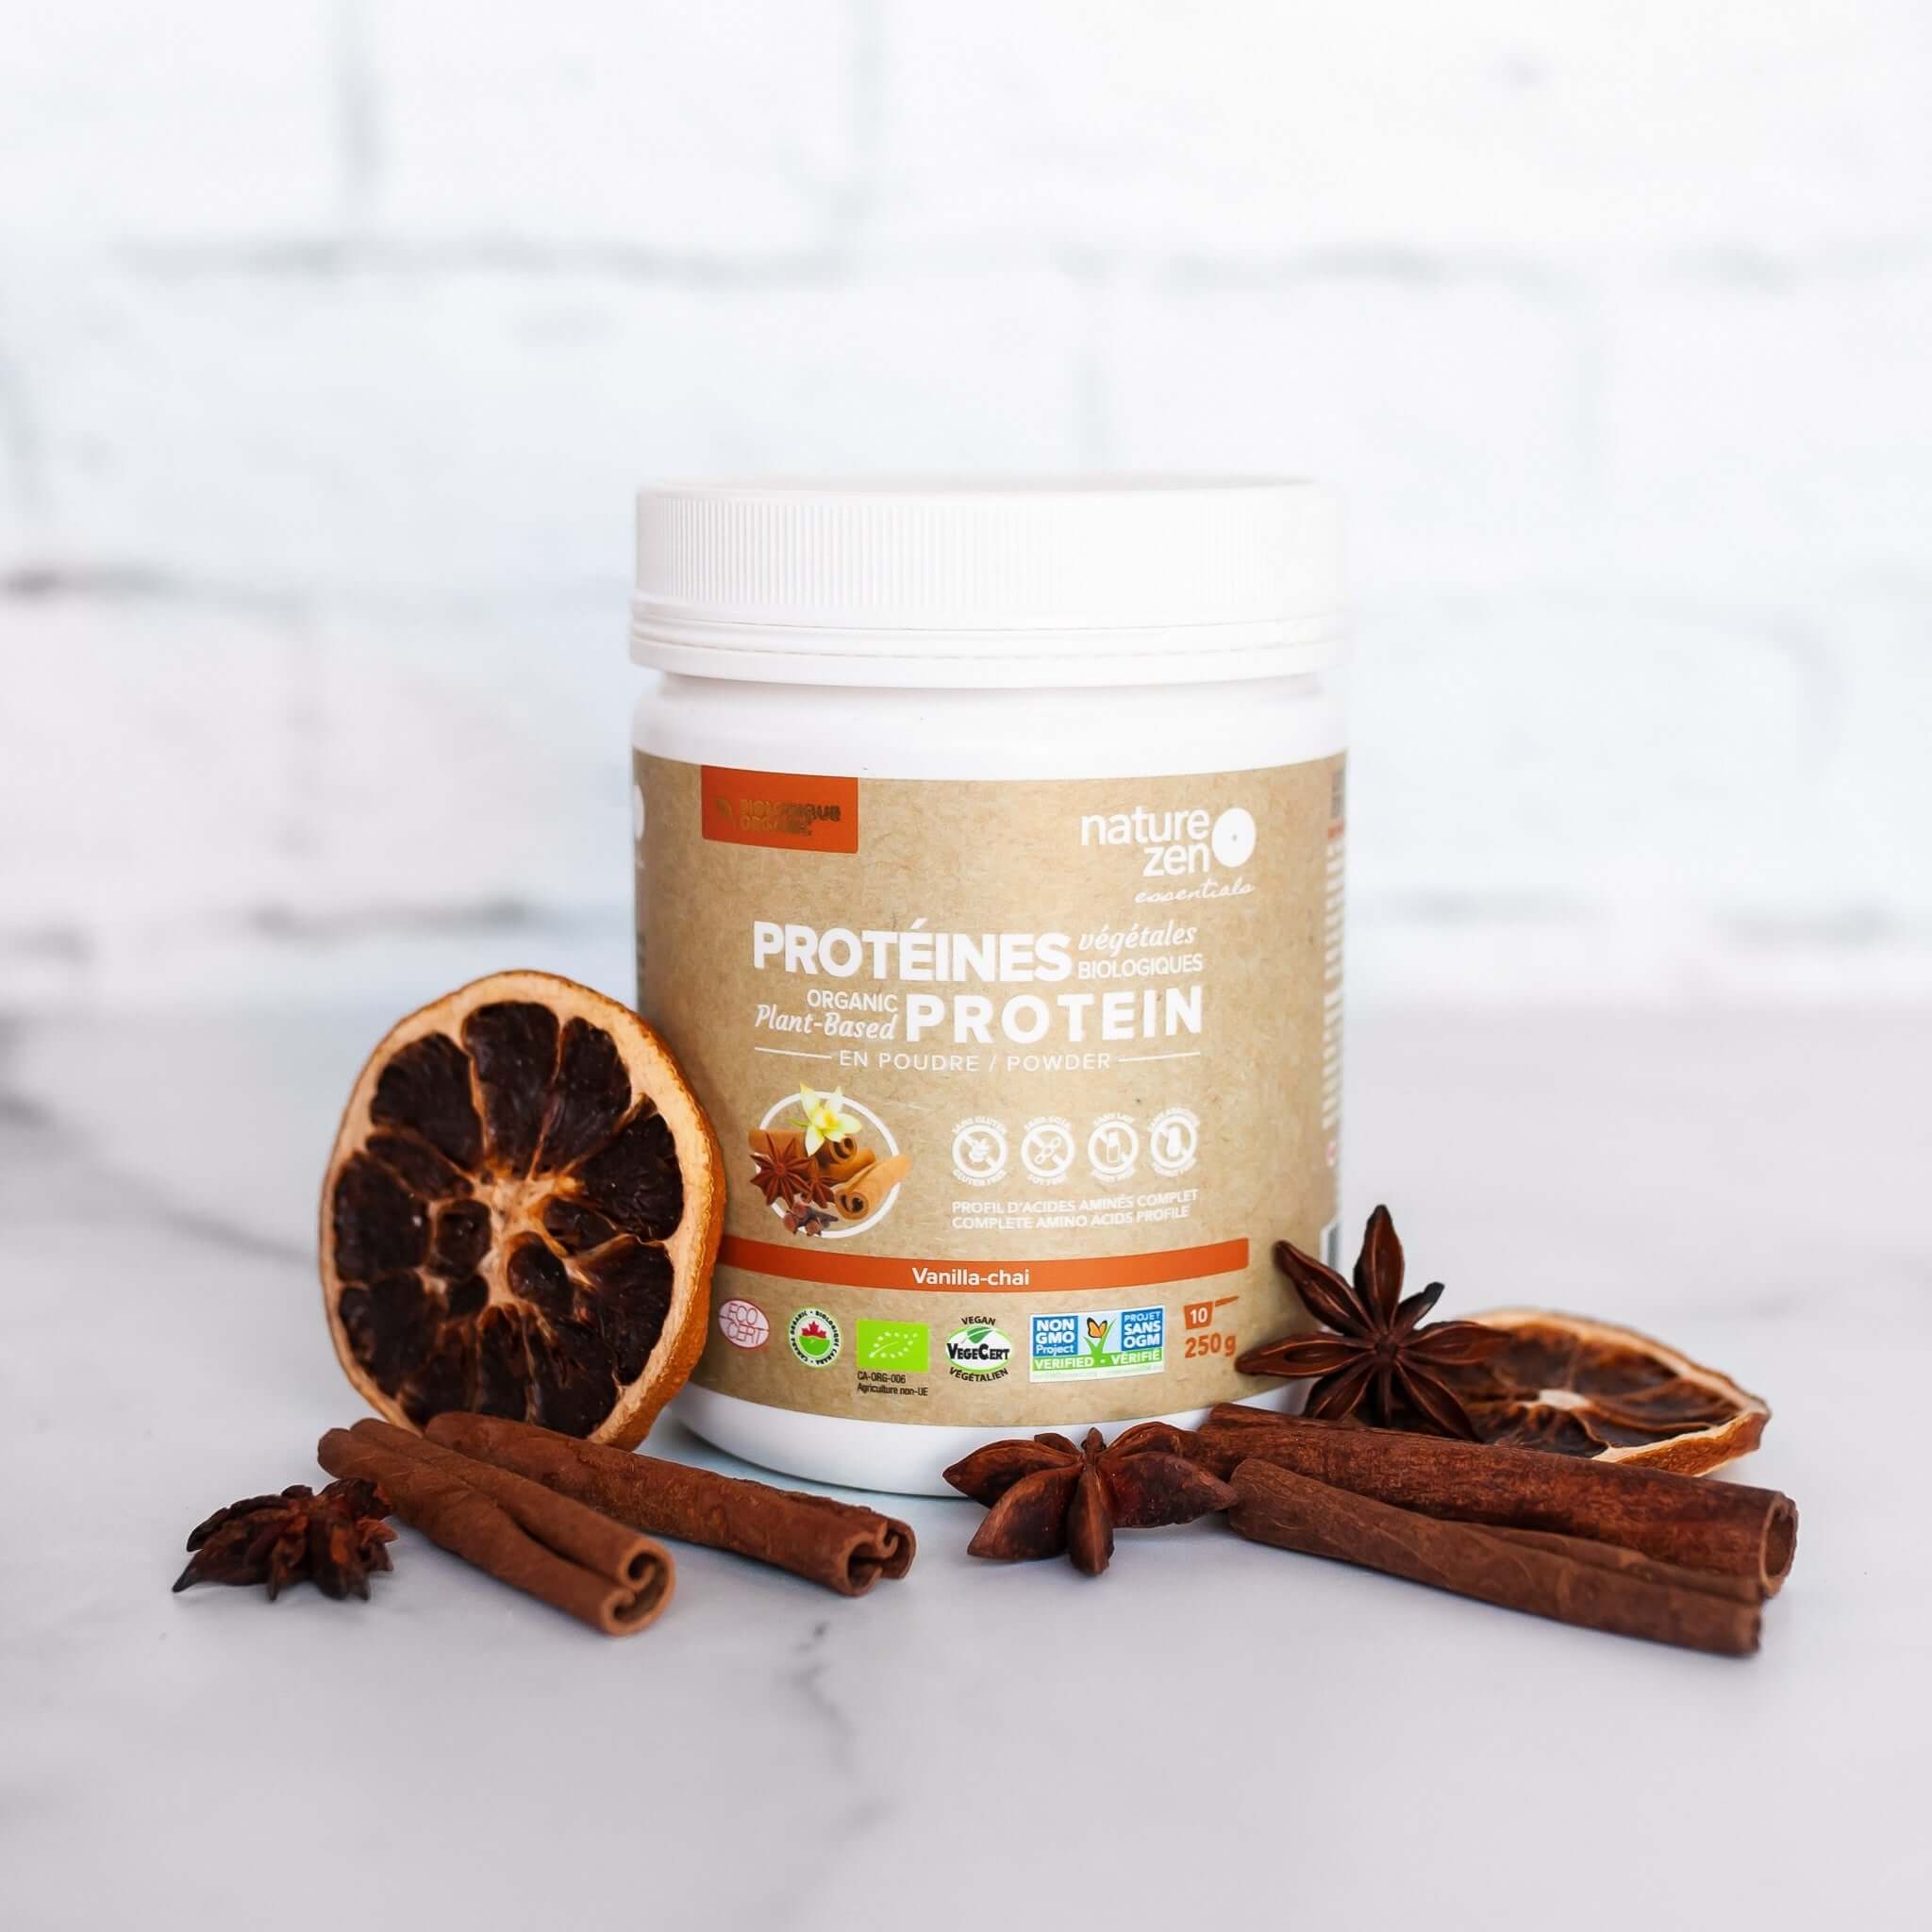 Nature Zen Essentials - Organic Plant-Based Protein Powder - Vanilla Chaï flavor